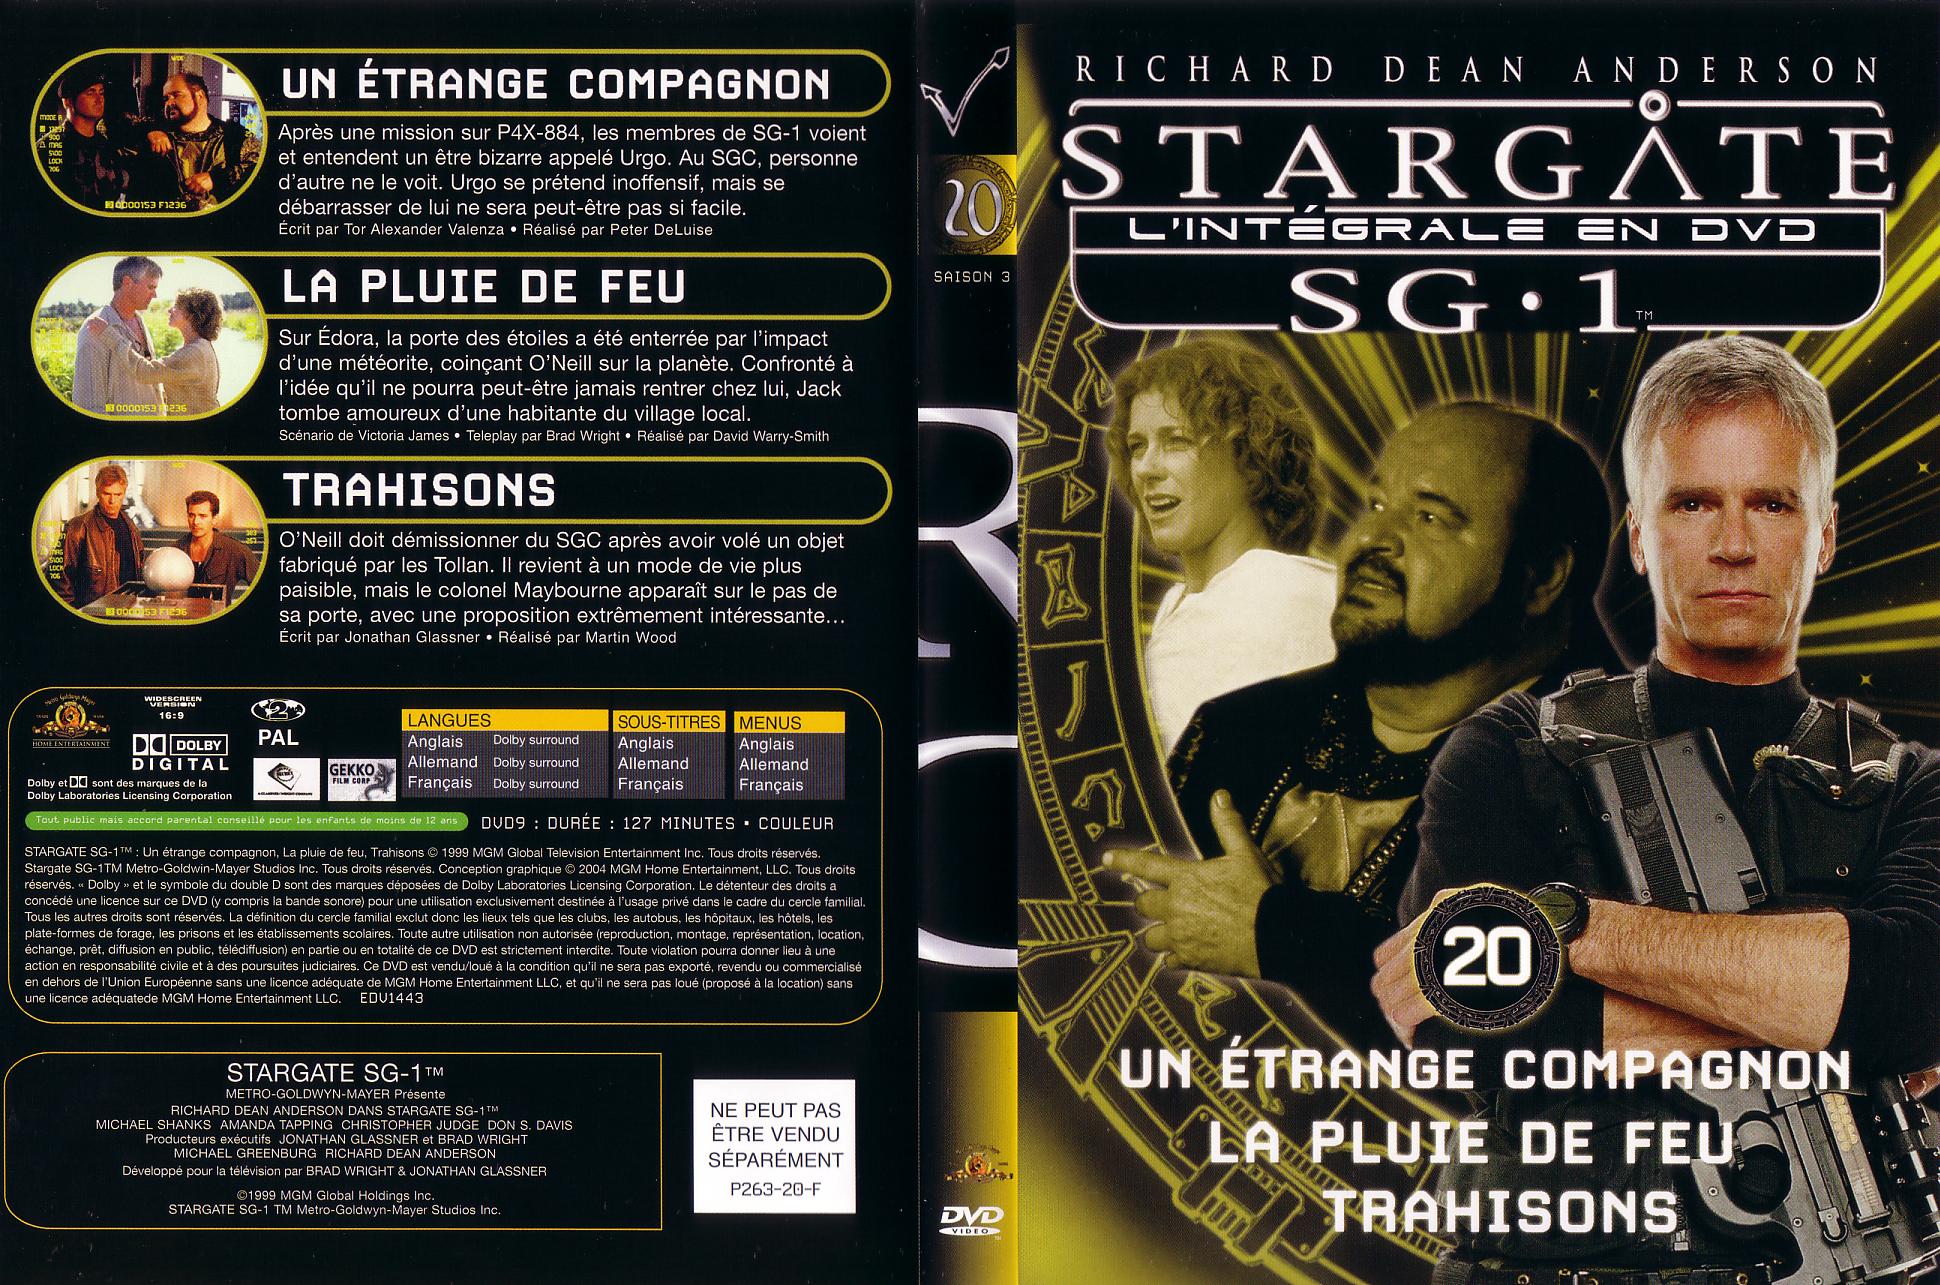 Jaquette DVD Stargate saison 3 vol 20